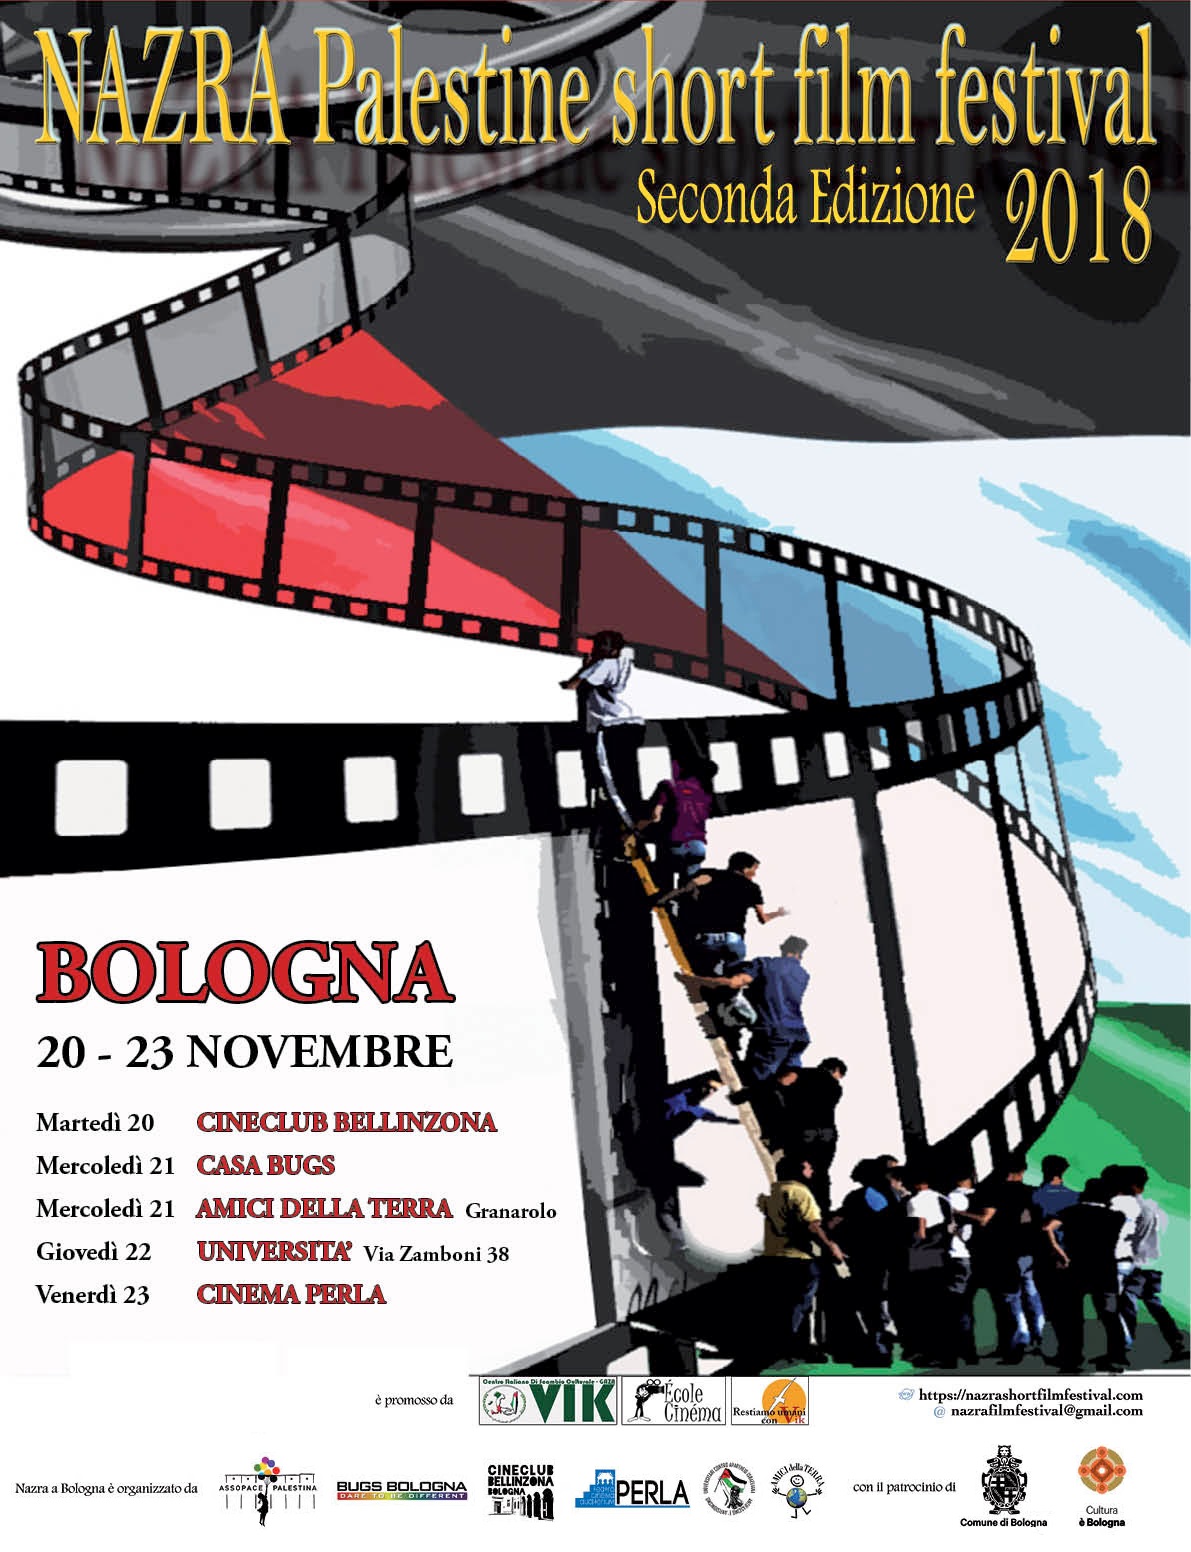 Bologna 20-23 novembre: NAZRA Palestine Short Film Festival.